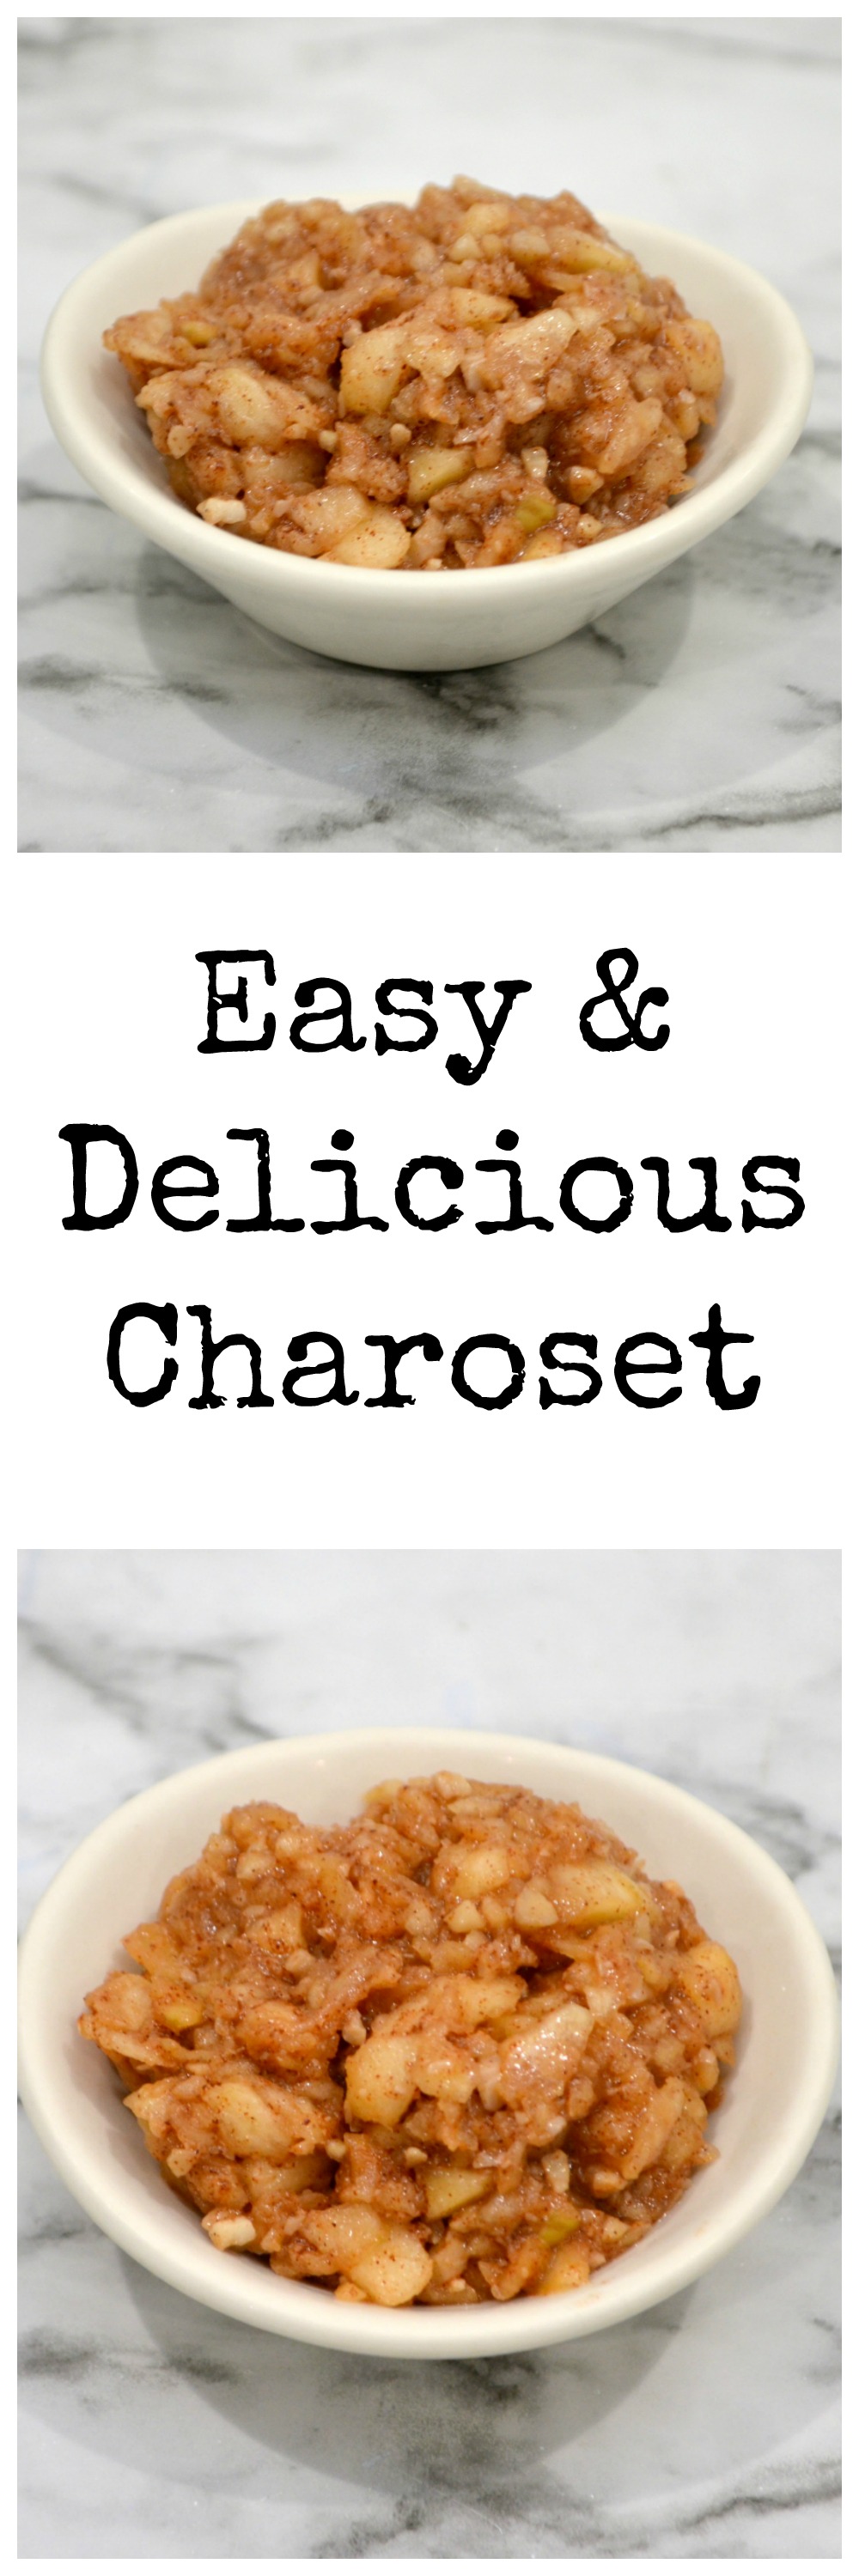 Easy & Delicious Charoset